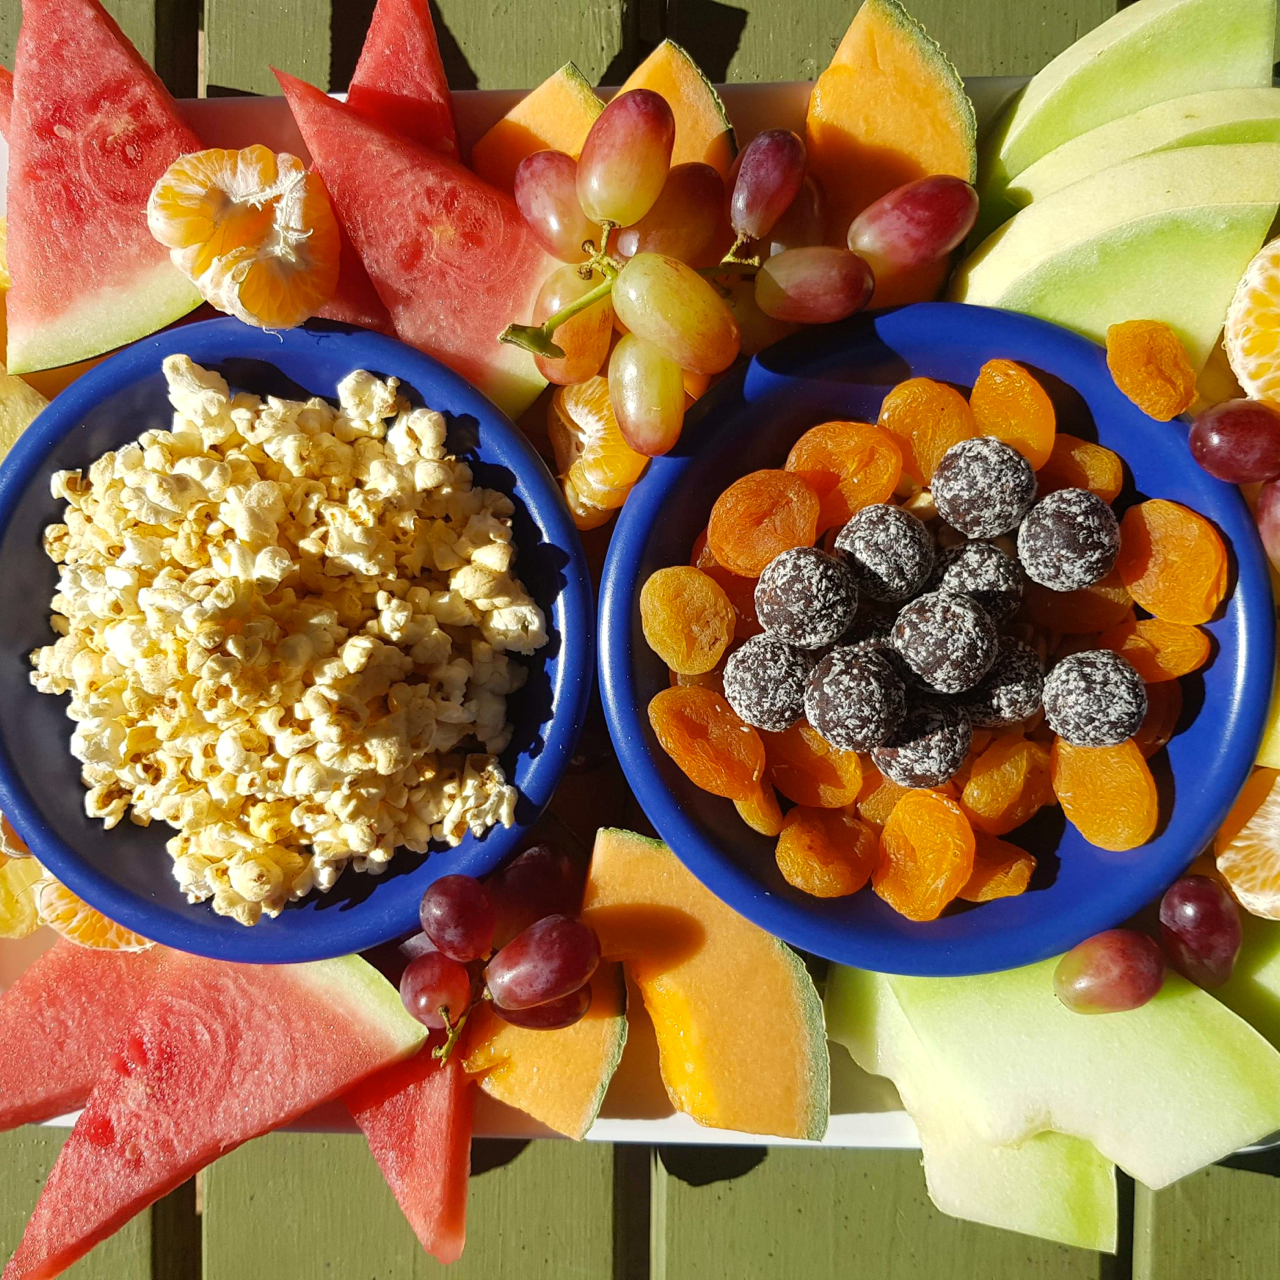 yoga-hike-food-fruit-platter-yiking-yike.jpg